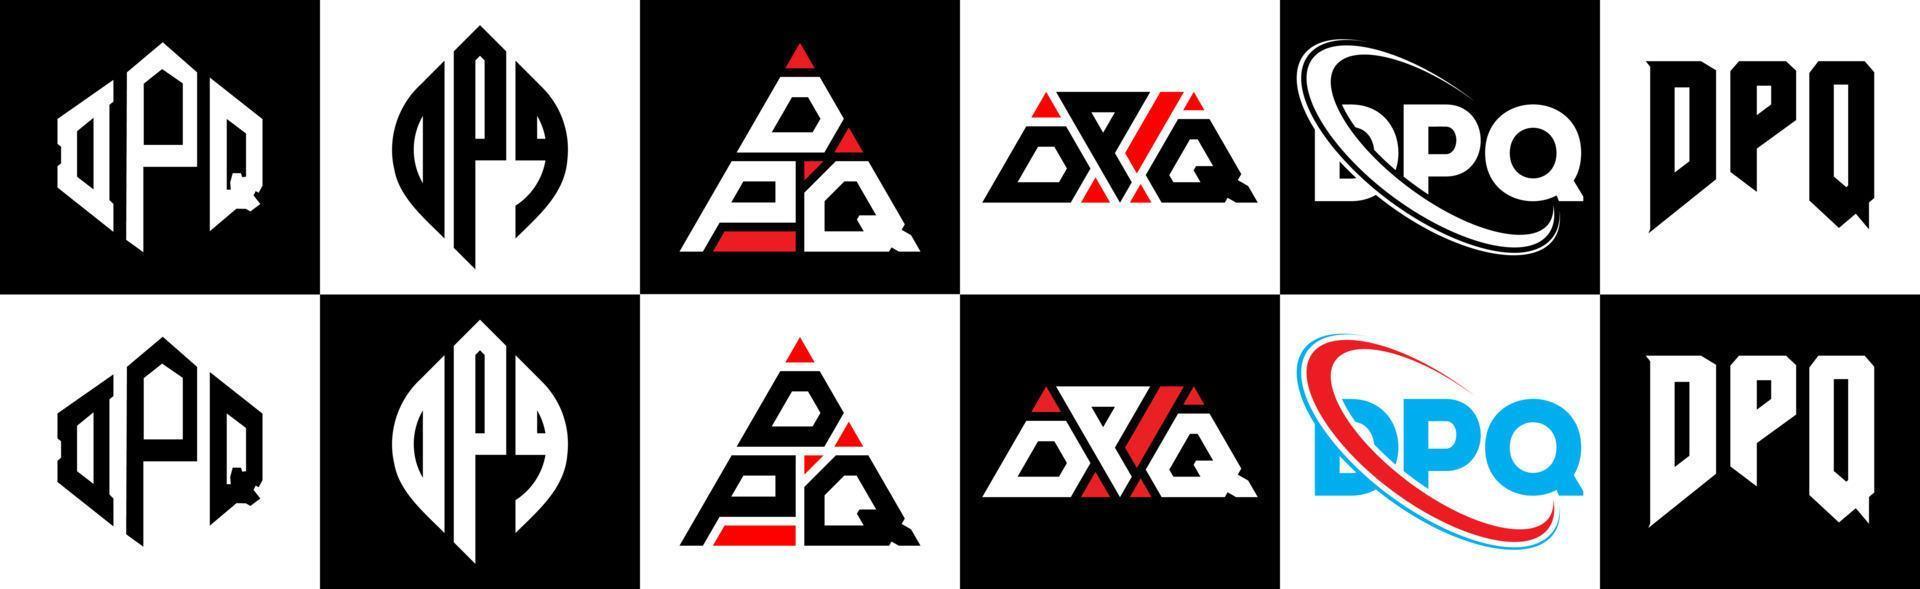 création de logo de lettre dpq en six styles. polygone dpq, cercle, triangle, hexagone, style plat et simple avec logo de lettre de variation de couleur noir et blanc dans un plan de travail. logo minimaliste et classique dpq vecteur